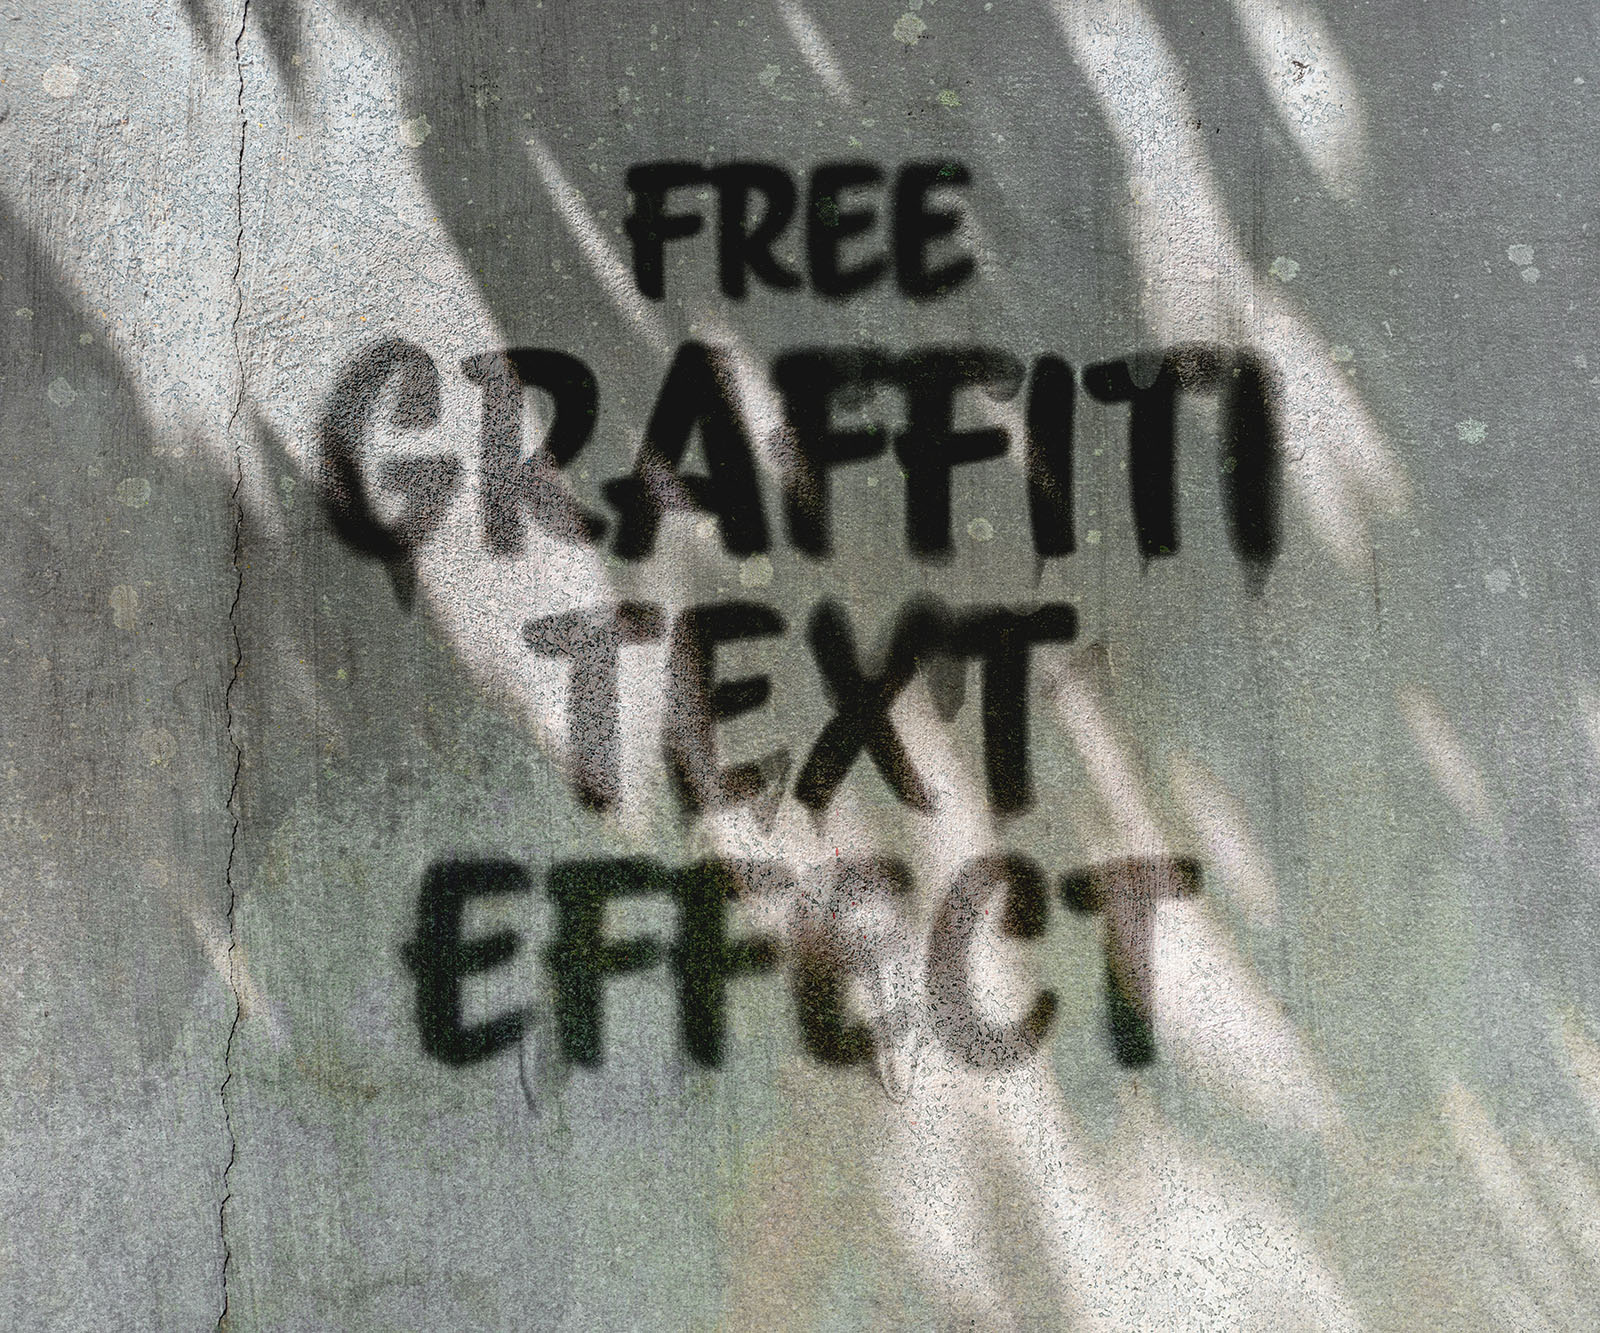 Free graffiti text effect